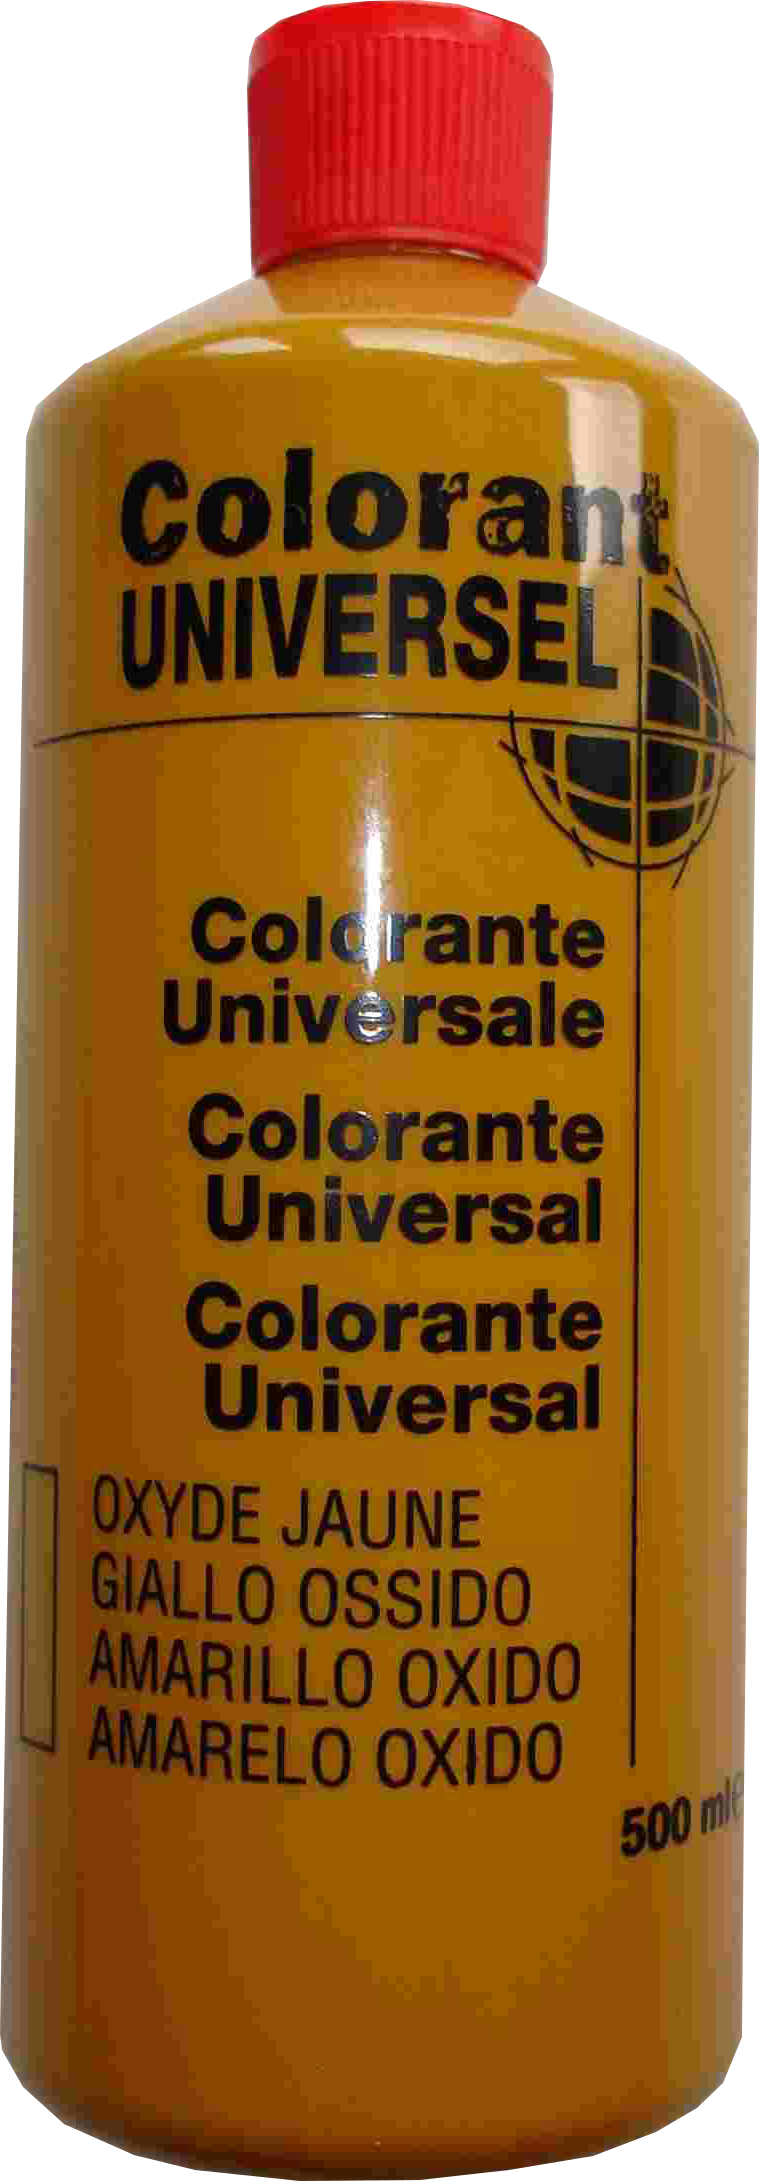 Colorant universel pour peinture oxyde jaune 500ml